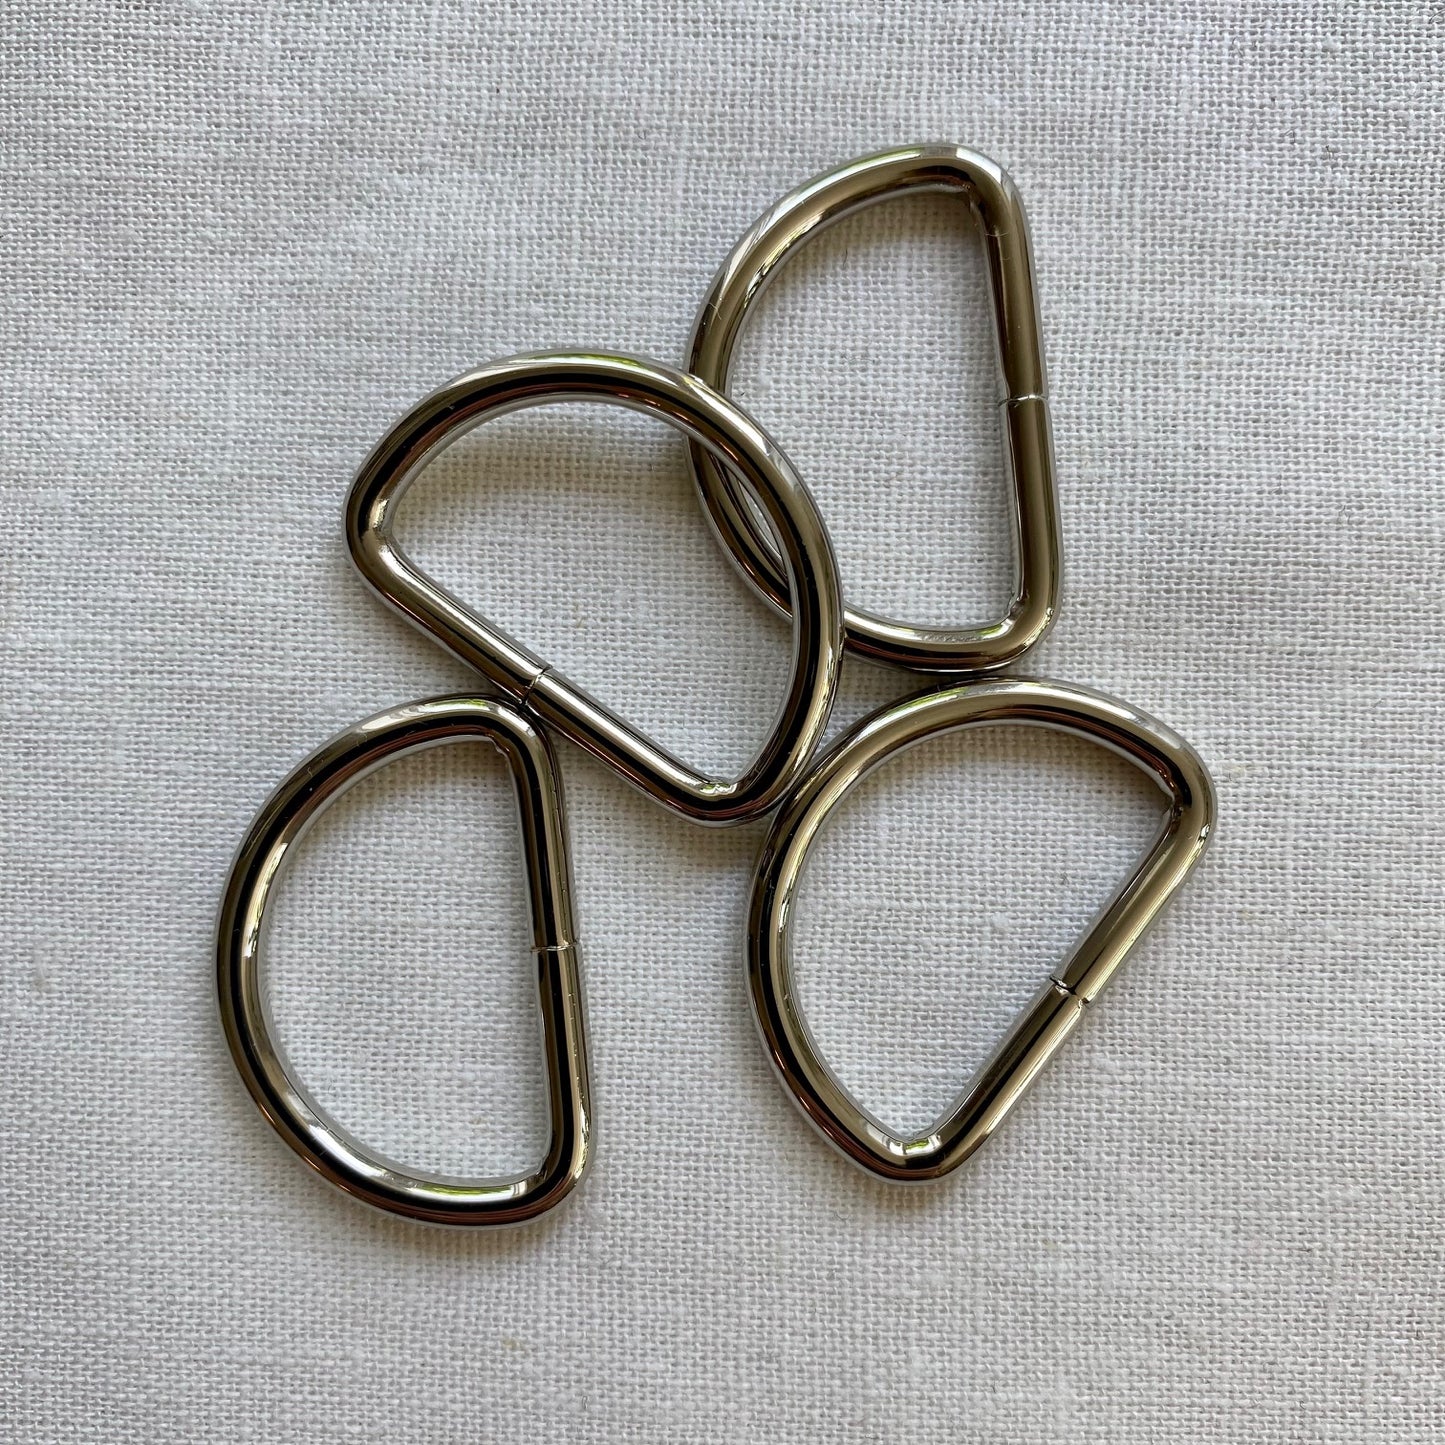 D-Ring 1", 4 pack, Nickel